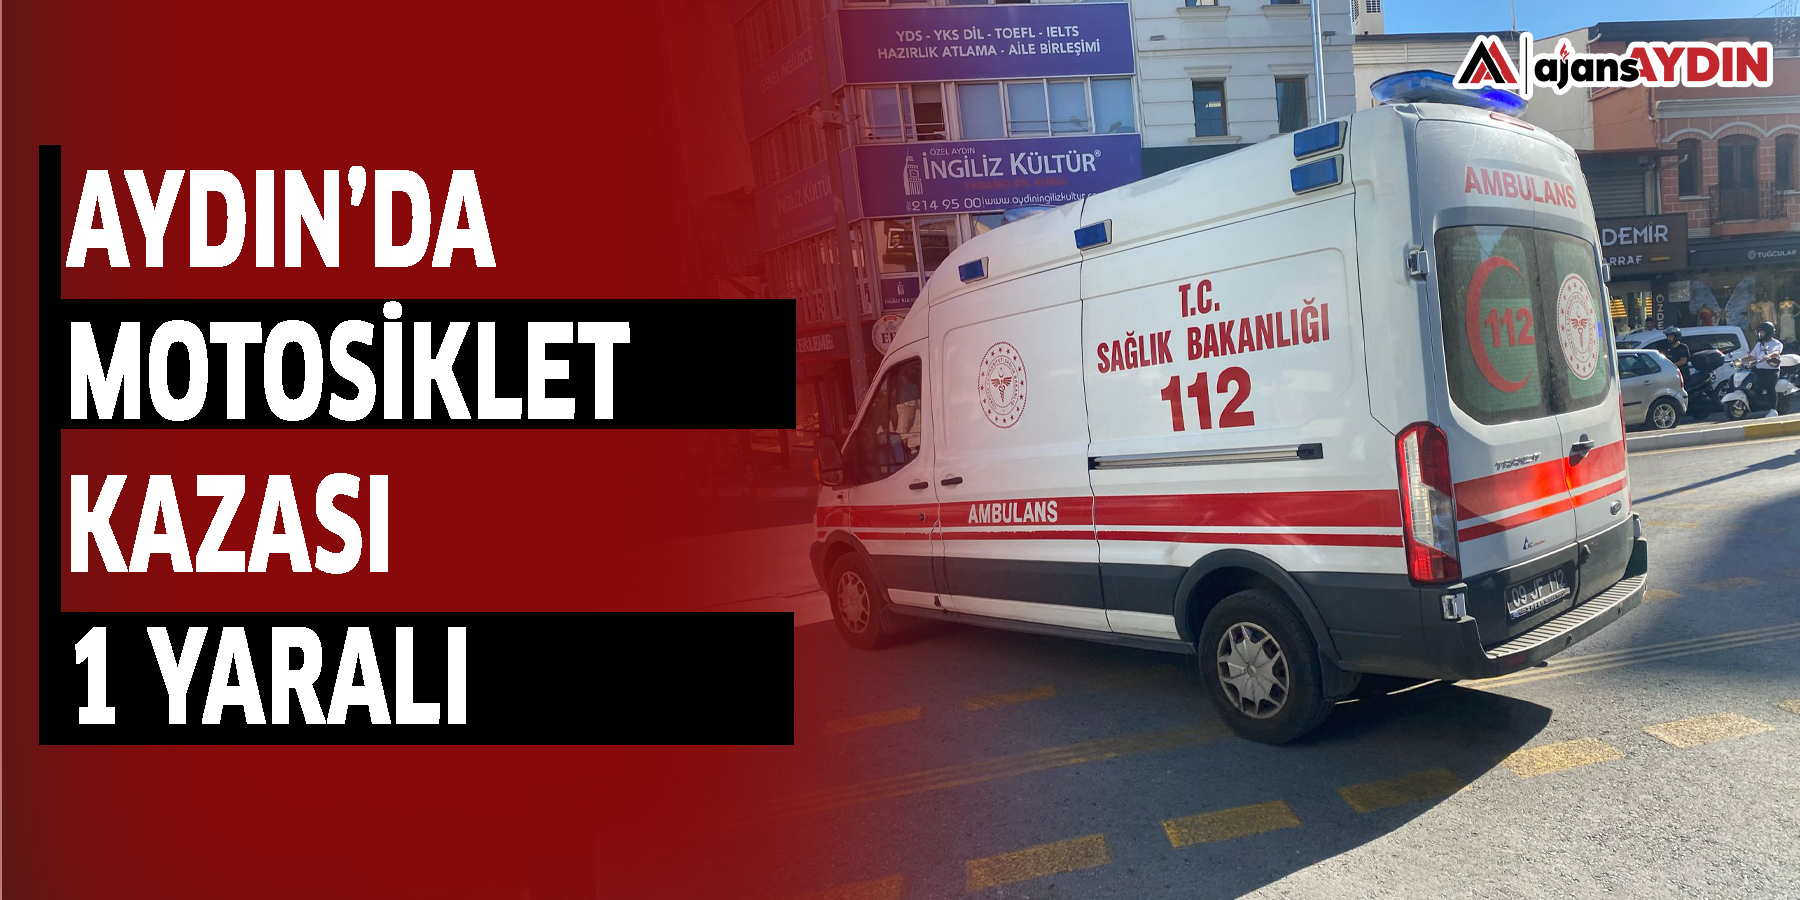 Aydın’da motosiklet kazası 1 yaralı